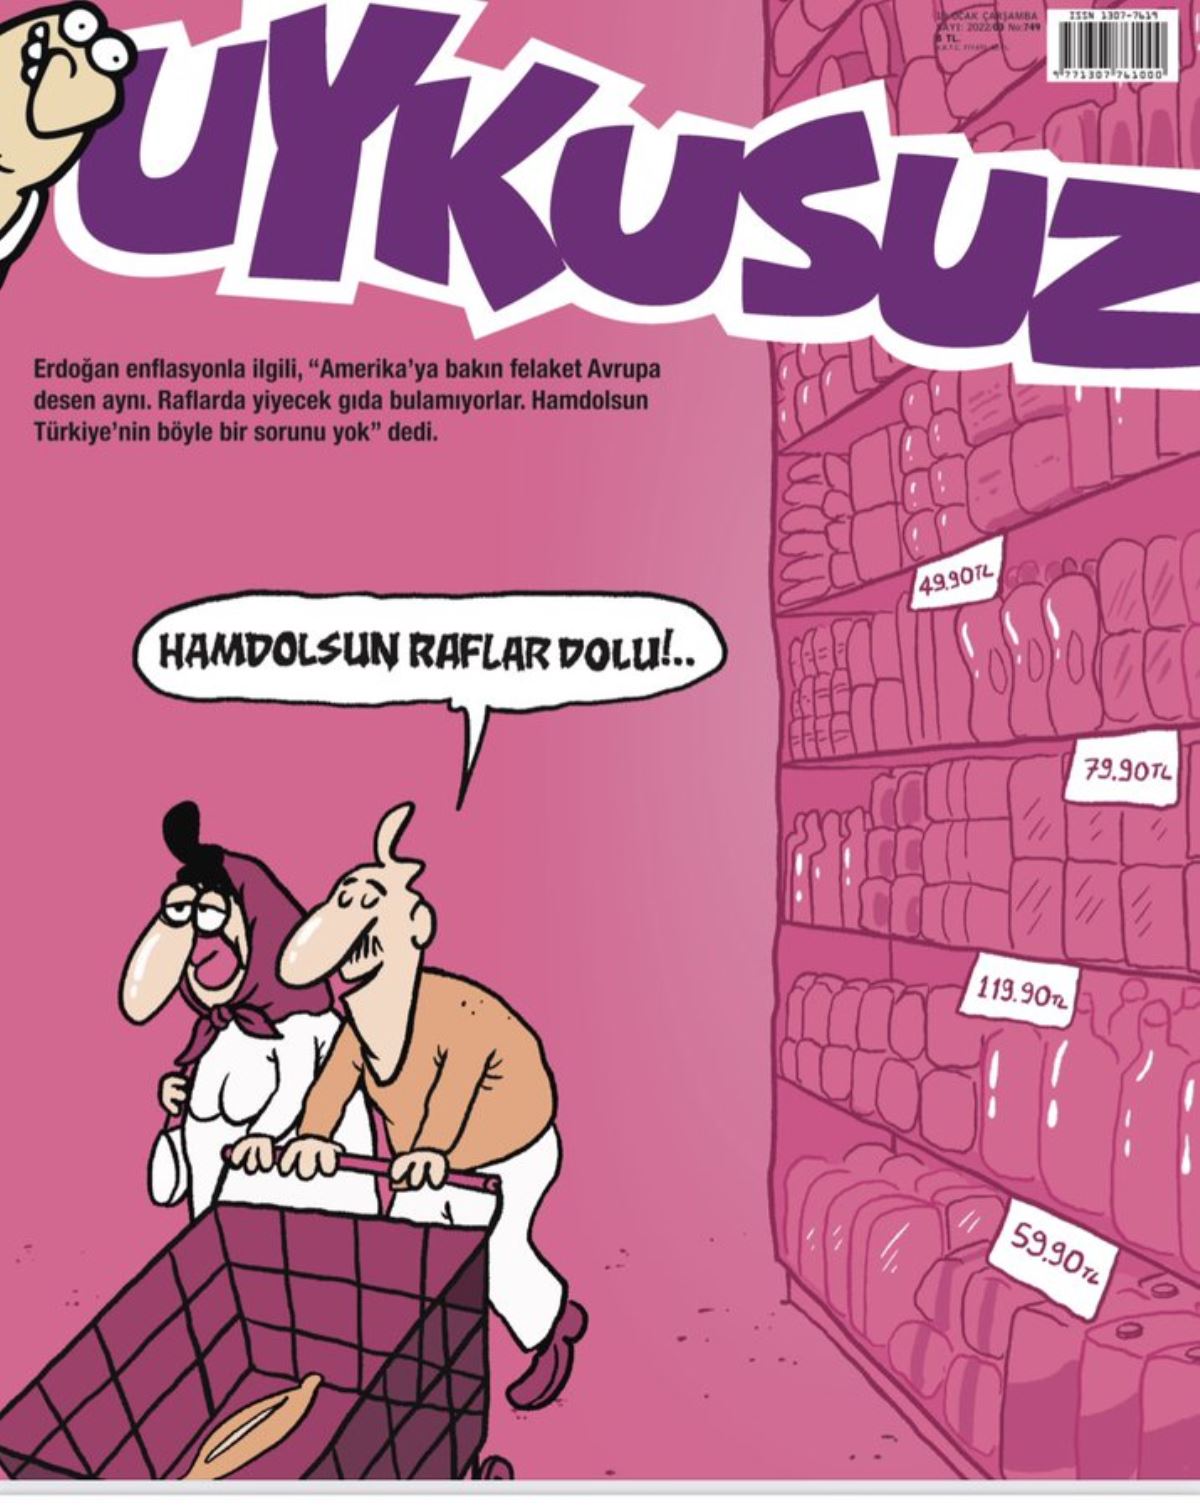 Թուրքական երգիծական հանդեսը ծաղրանկար է հրապարակել գնաճի շուրջ Էրդողանի հայտարարության վերաբերյալ